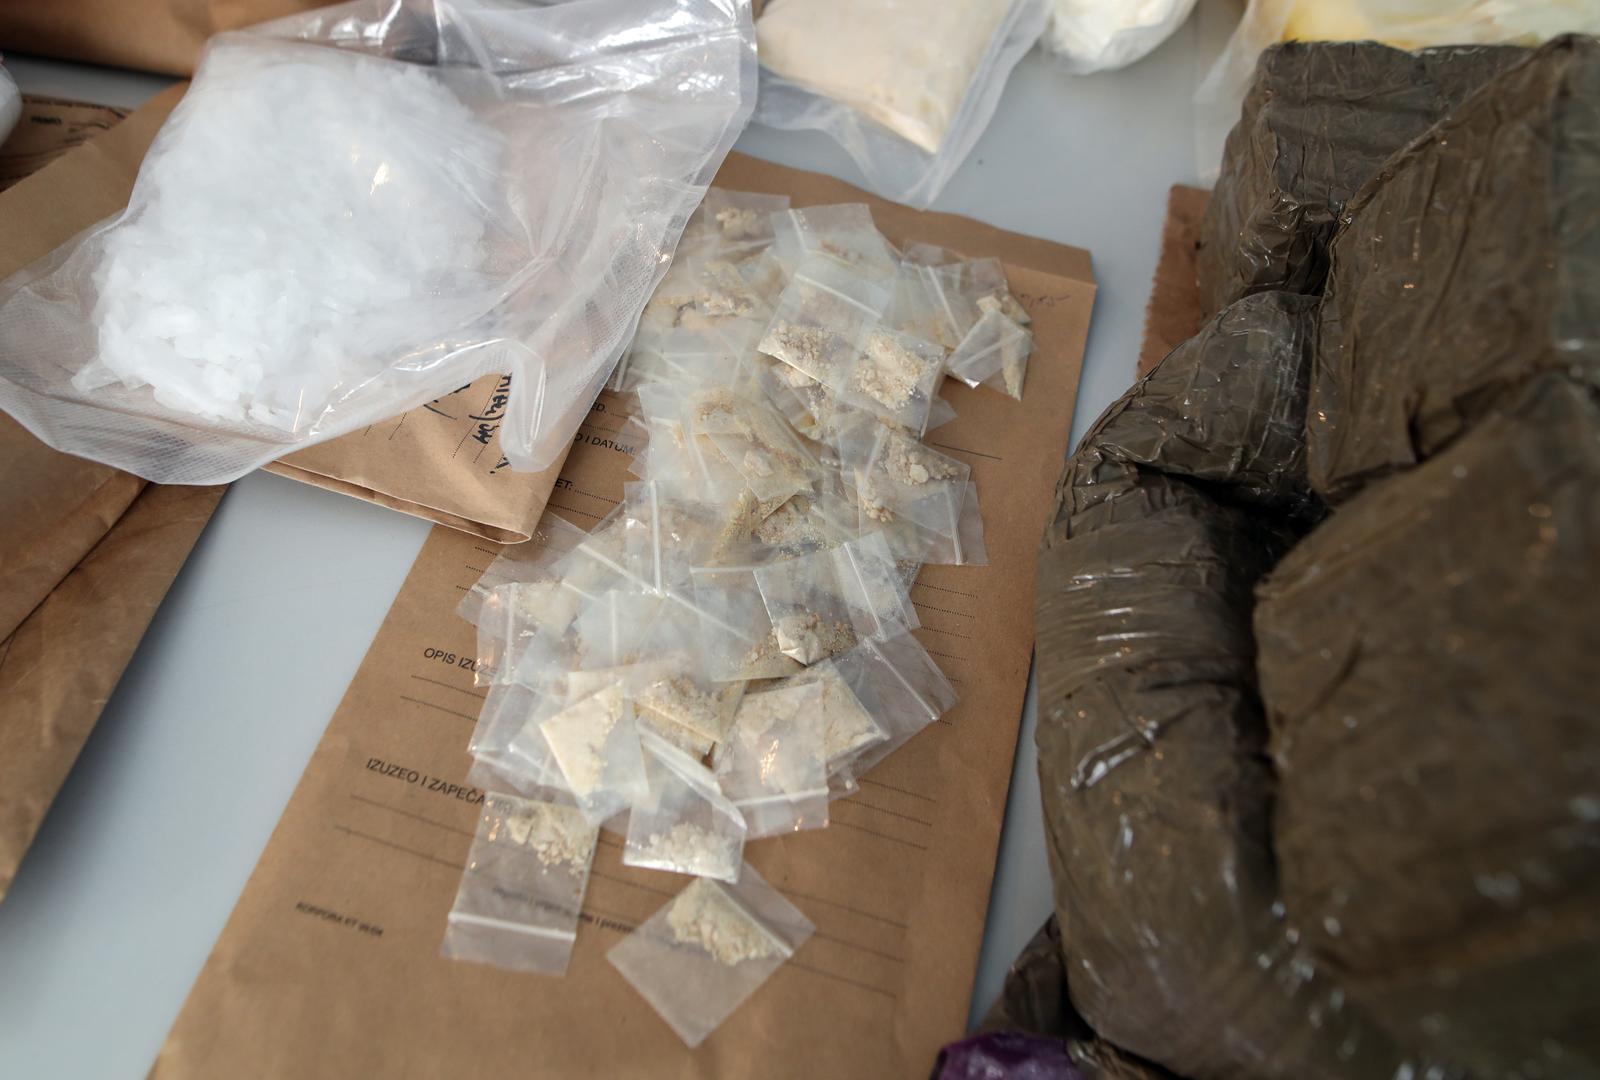 23.02.2022., Zagreb - U PU zagrebackoj dovrseno je kriminalisticko istrazivanje u kojemu je pronadjeno vise od 12 kg kokaina, 69 kg marihuane i vise od 36 tisuca tableta MDMA (ecstasyja). Photo: Zeljko Lukunic/PIXSELL